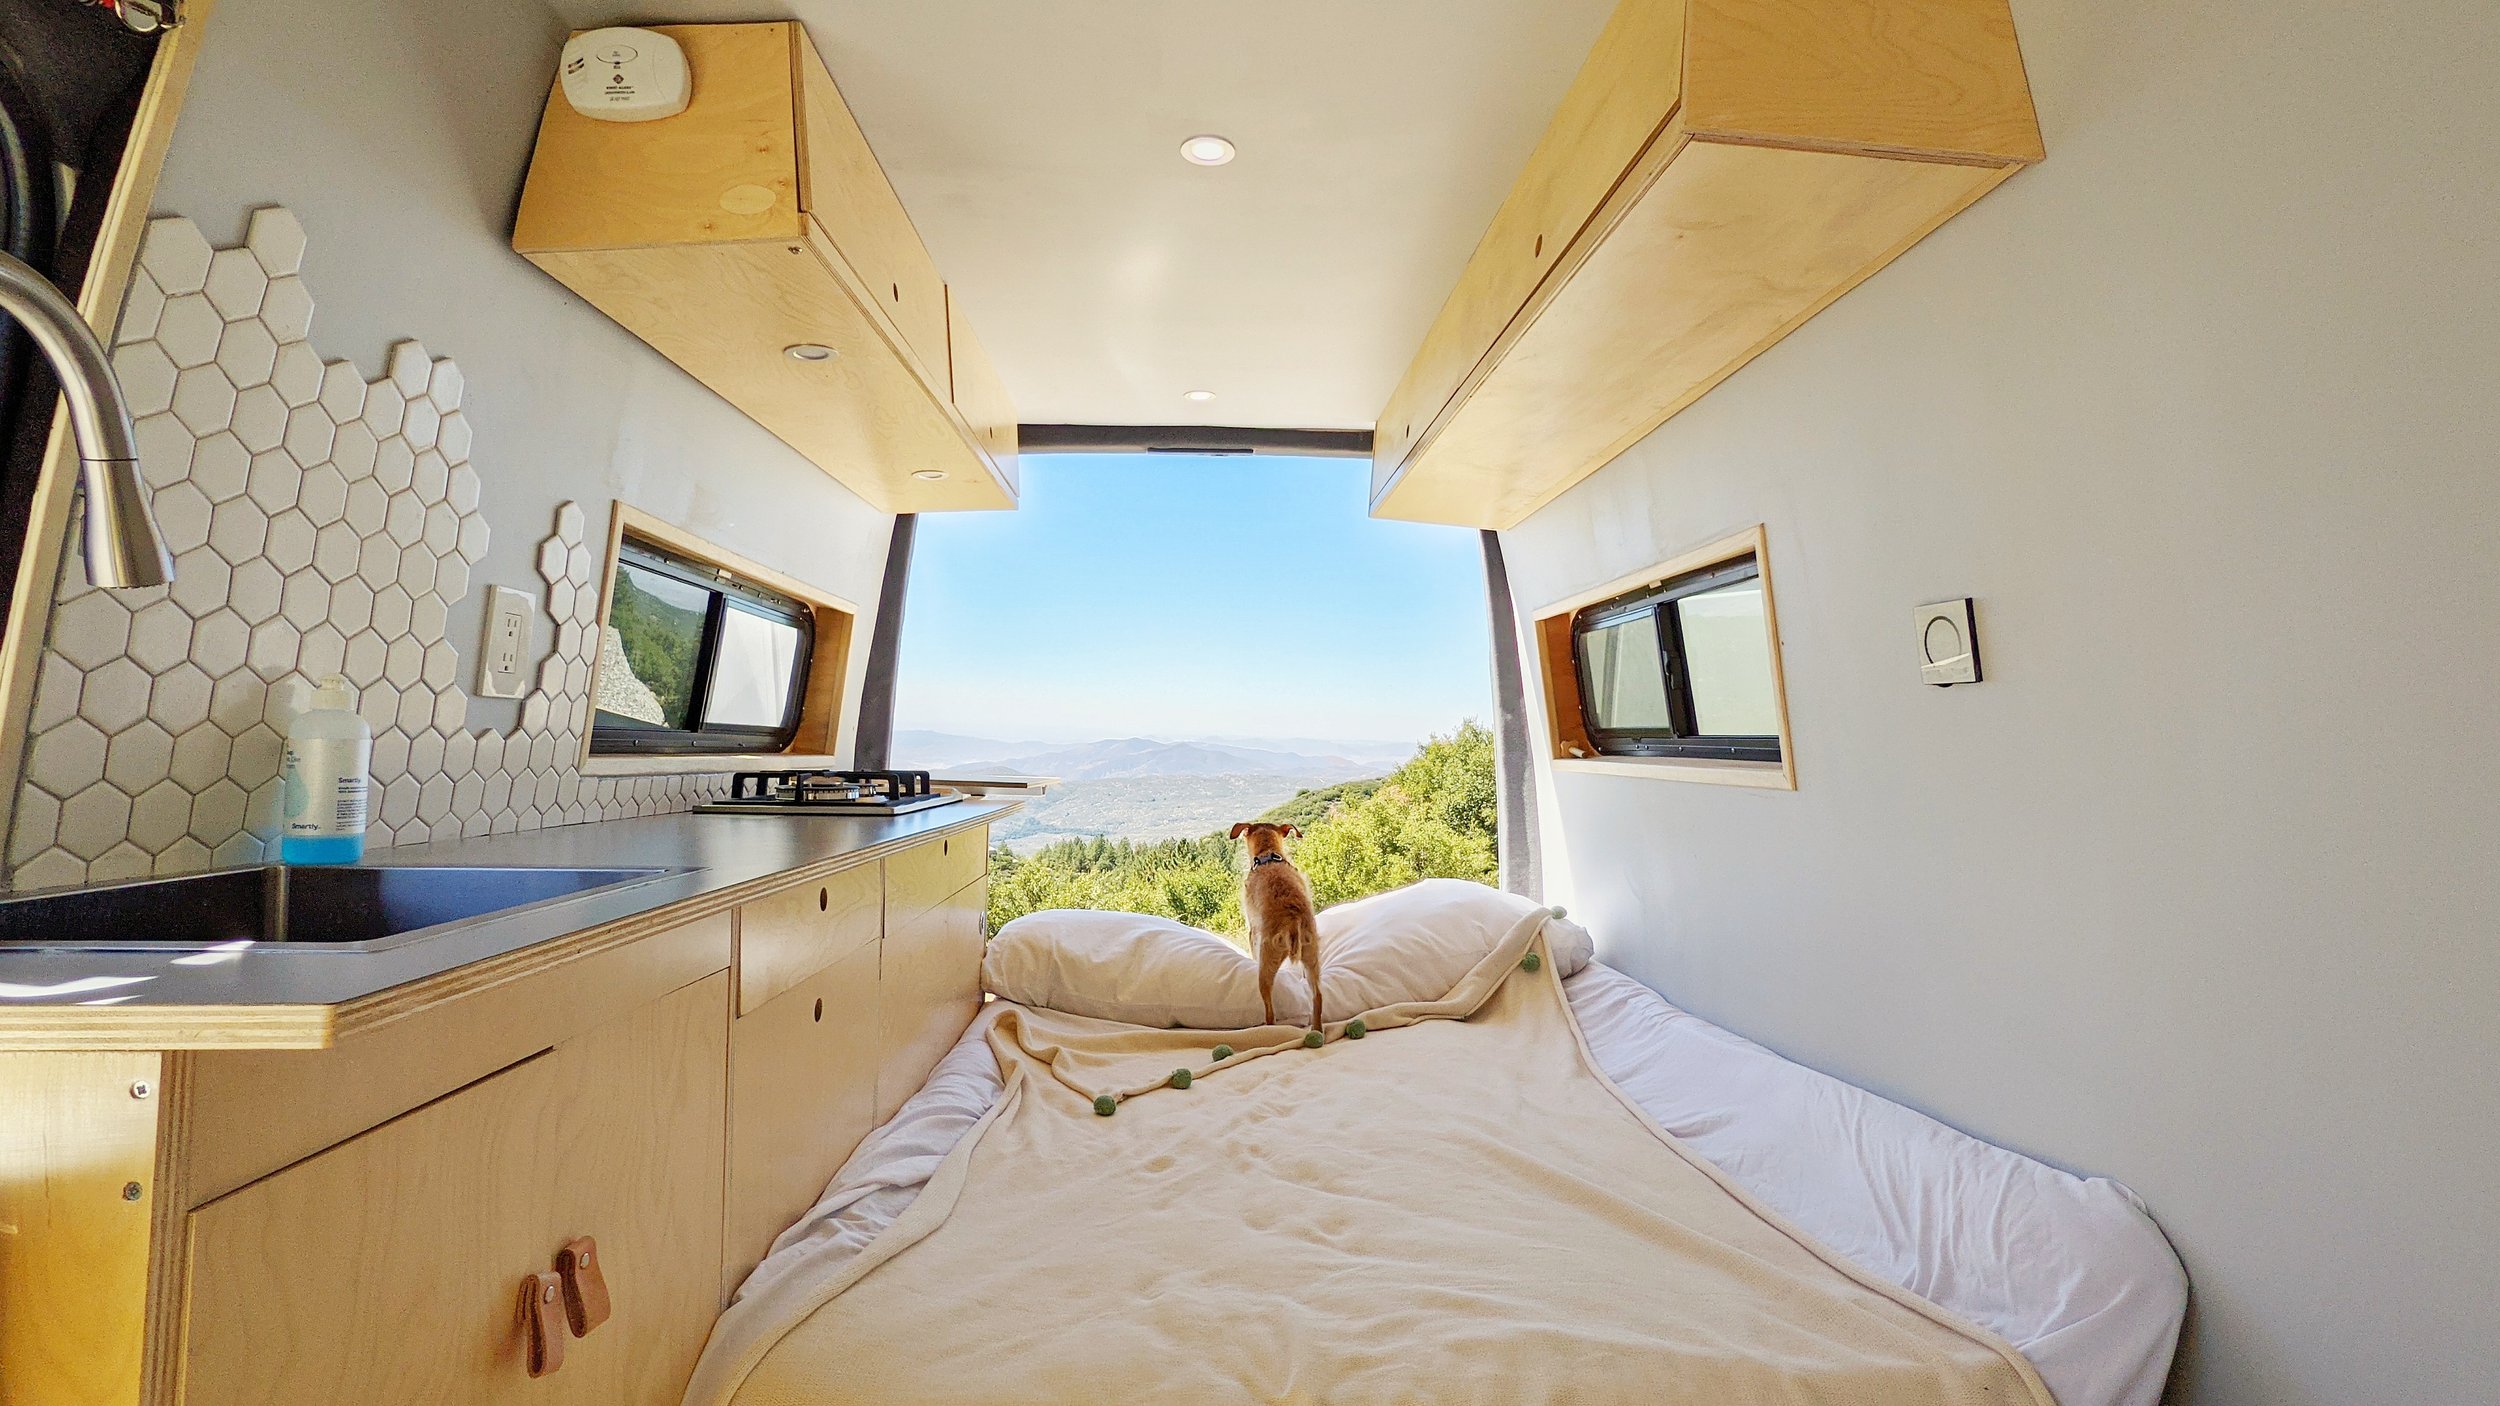 Diy Camper Van Bed That Converts Into A